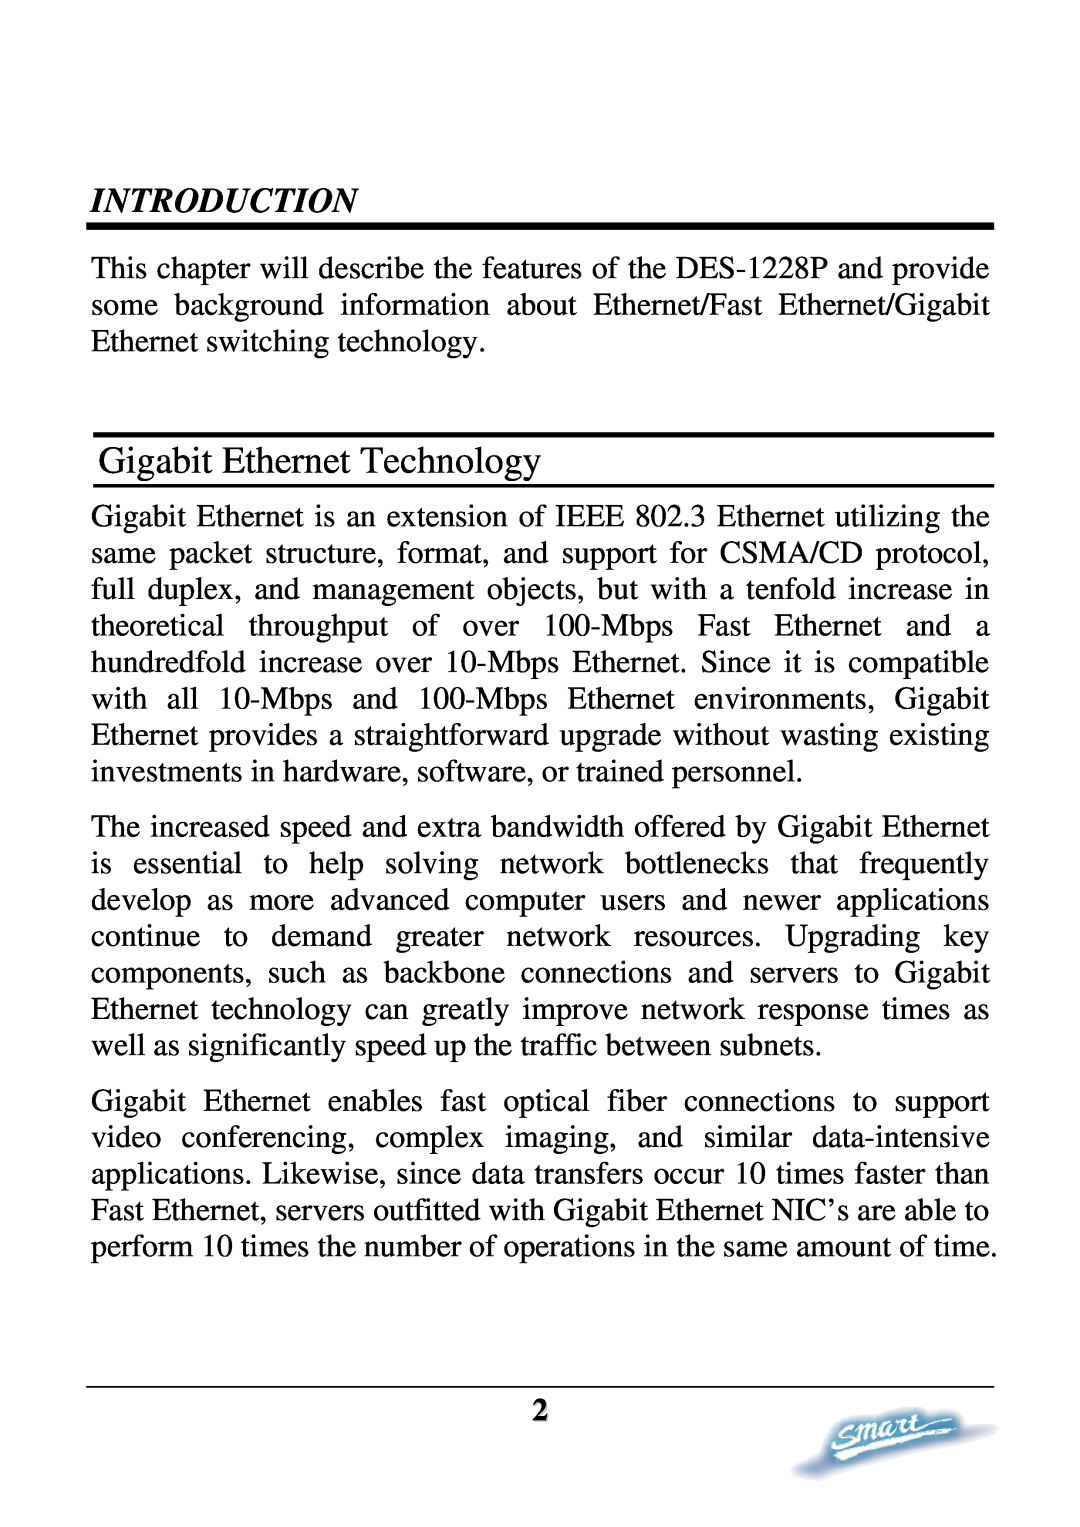 D-Link DES-1228P user manual Gigabit Ethernet Technology, Introduction 